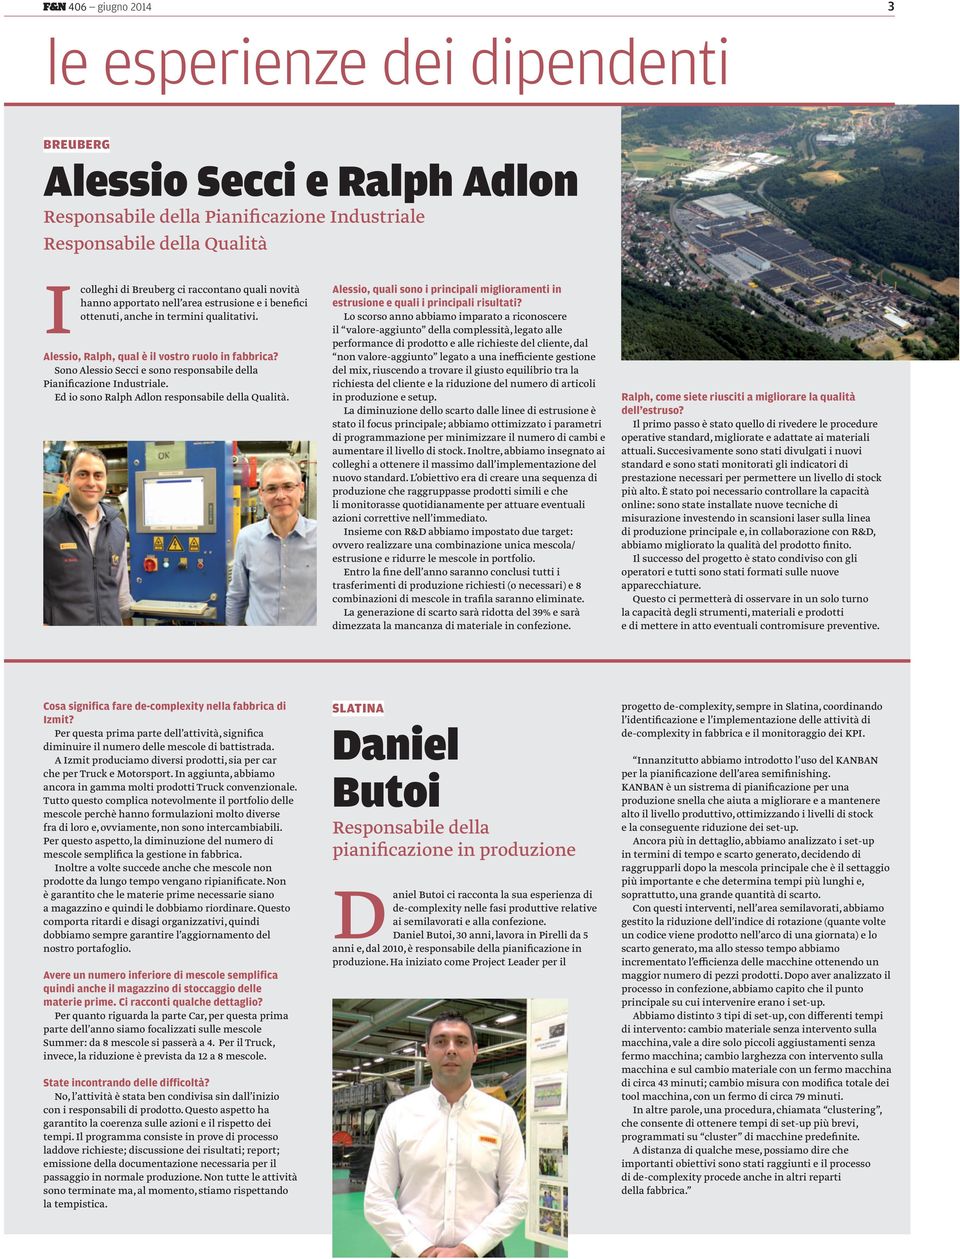 Sono Alessio Secci e sono responsabile della Pianificazione Industriale. Ed io sono Ralph Adlon responsabile della Qualità.